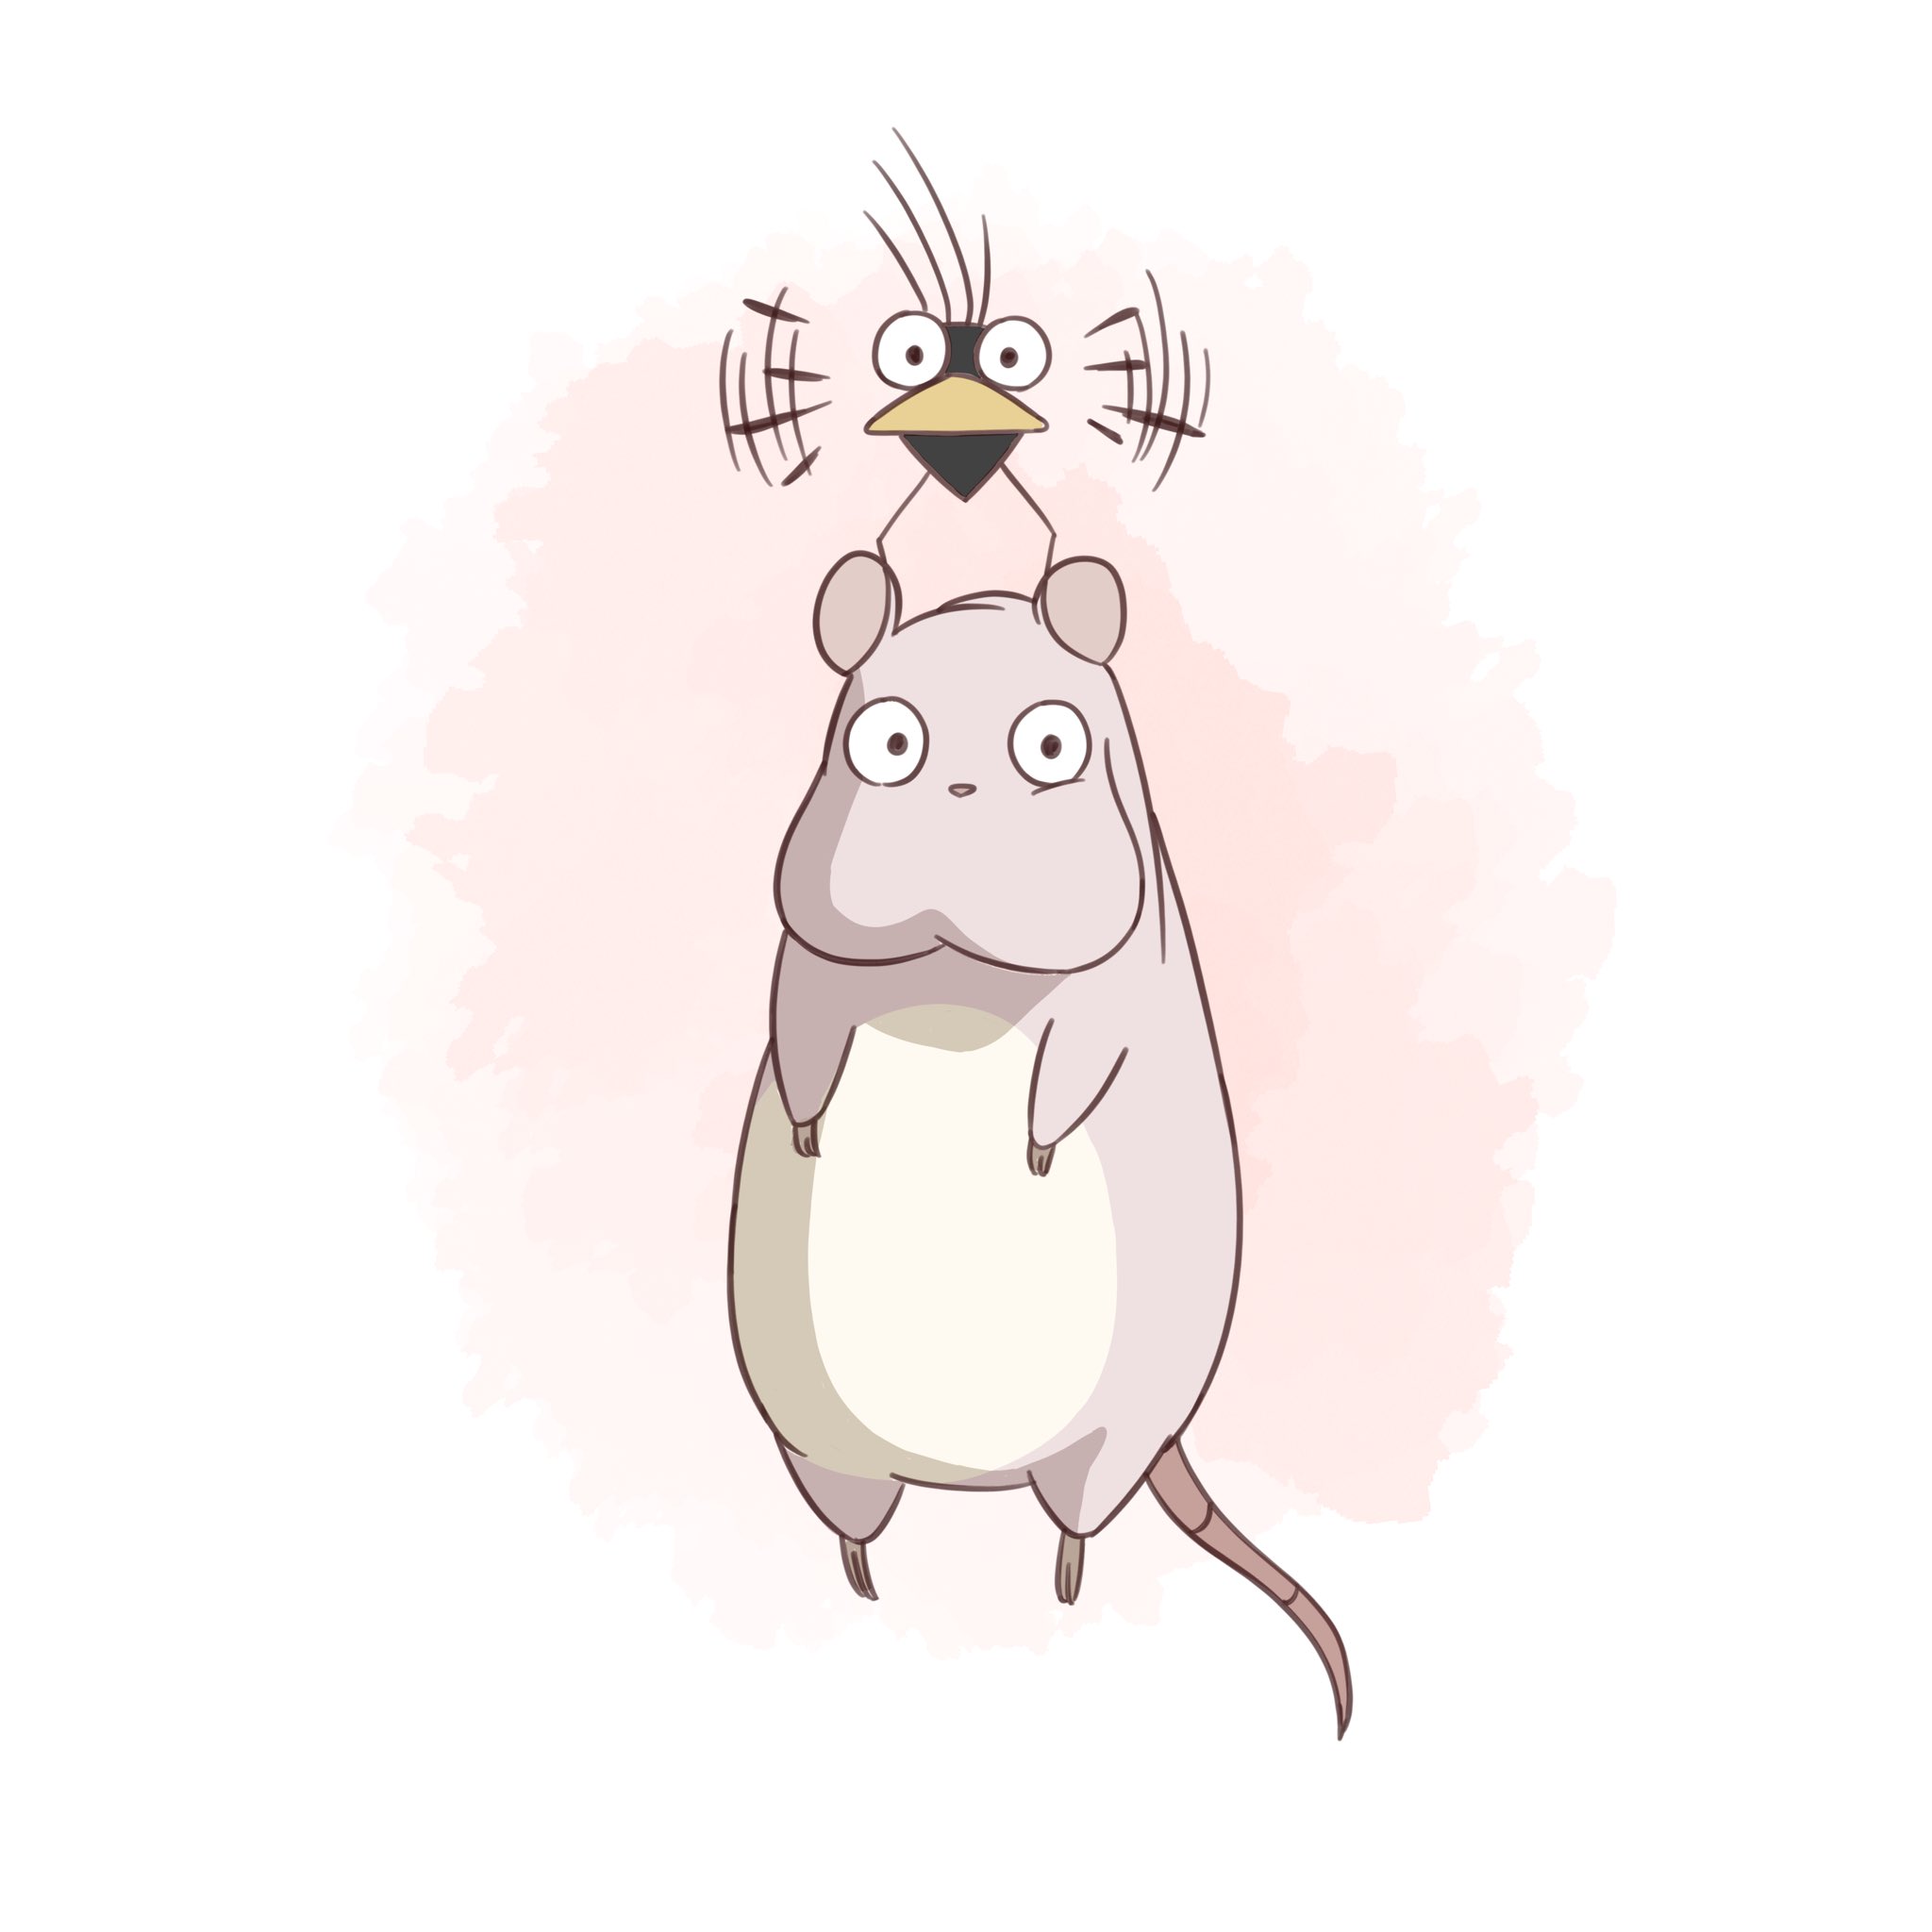 تويتر ゆう على تويتر 坊ネズミとハエドリ描きました この2匹可愛いですよね 千と千尋の神隠し 坊ネズミ ハエドリ ジブリ イラスト 絵描きさんと繋がりたい Studioghibli T Co On0rlvpo1h